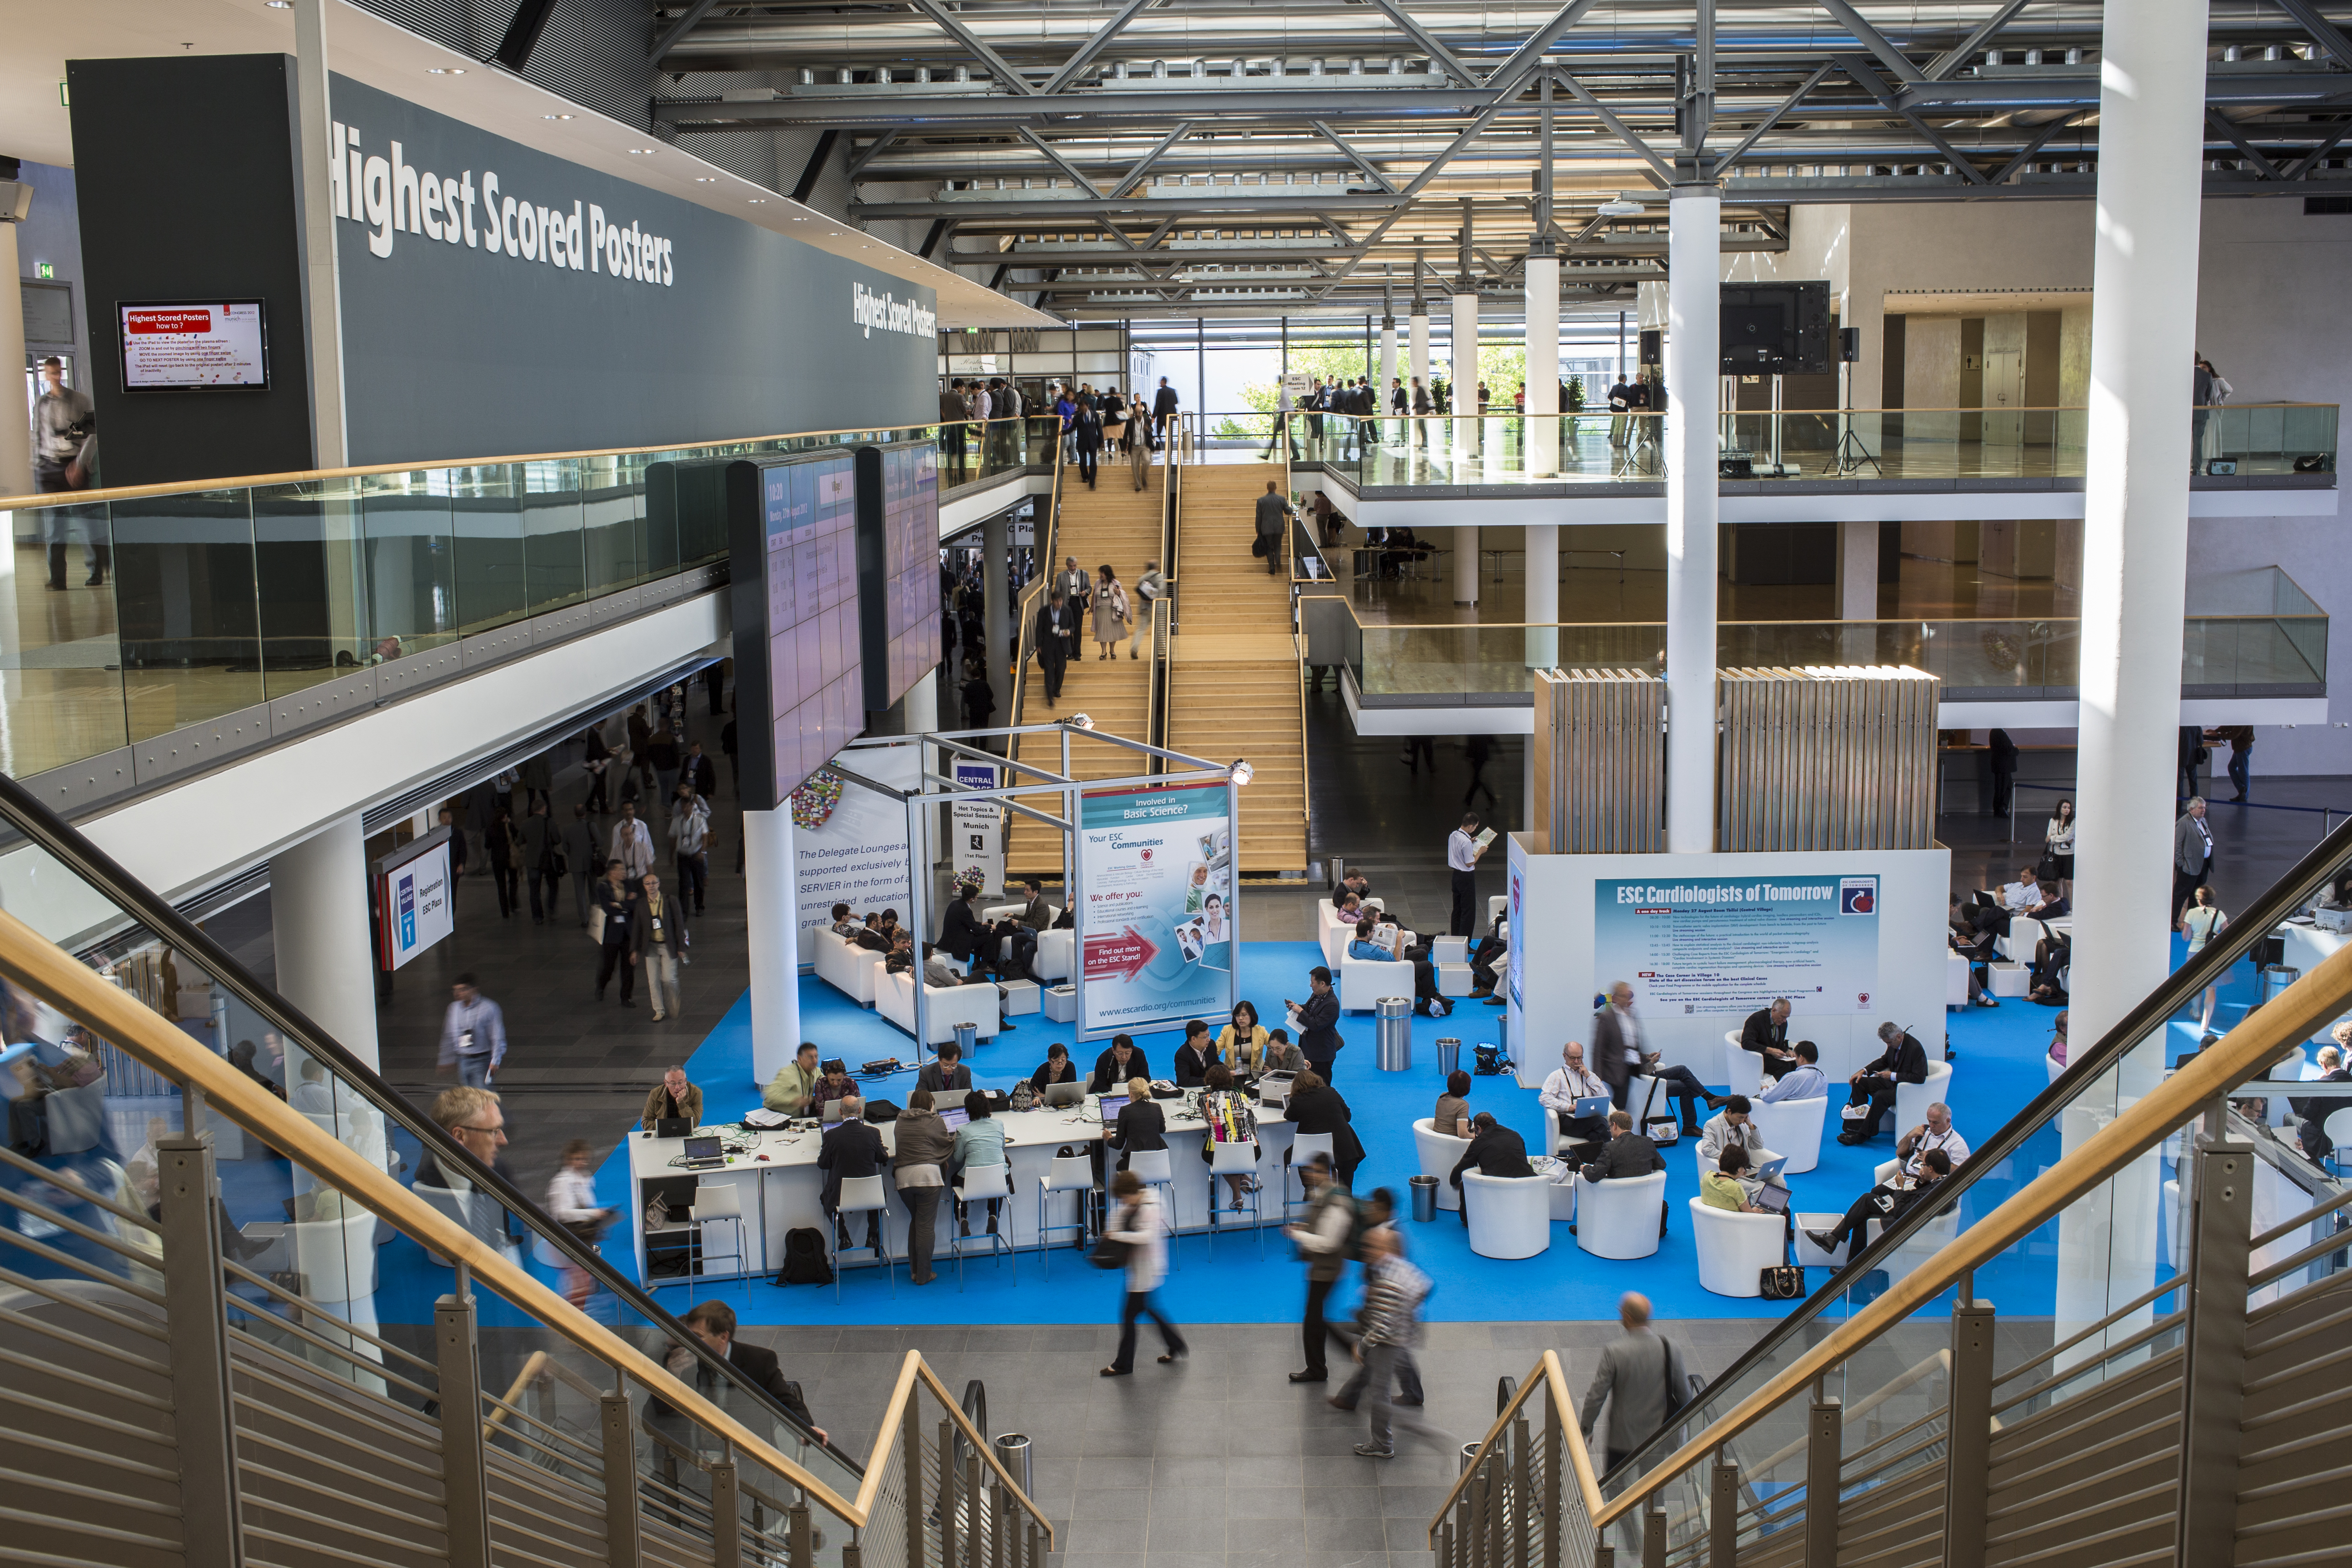 ICM – International Congress Center Messe München